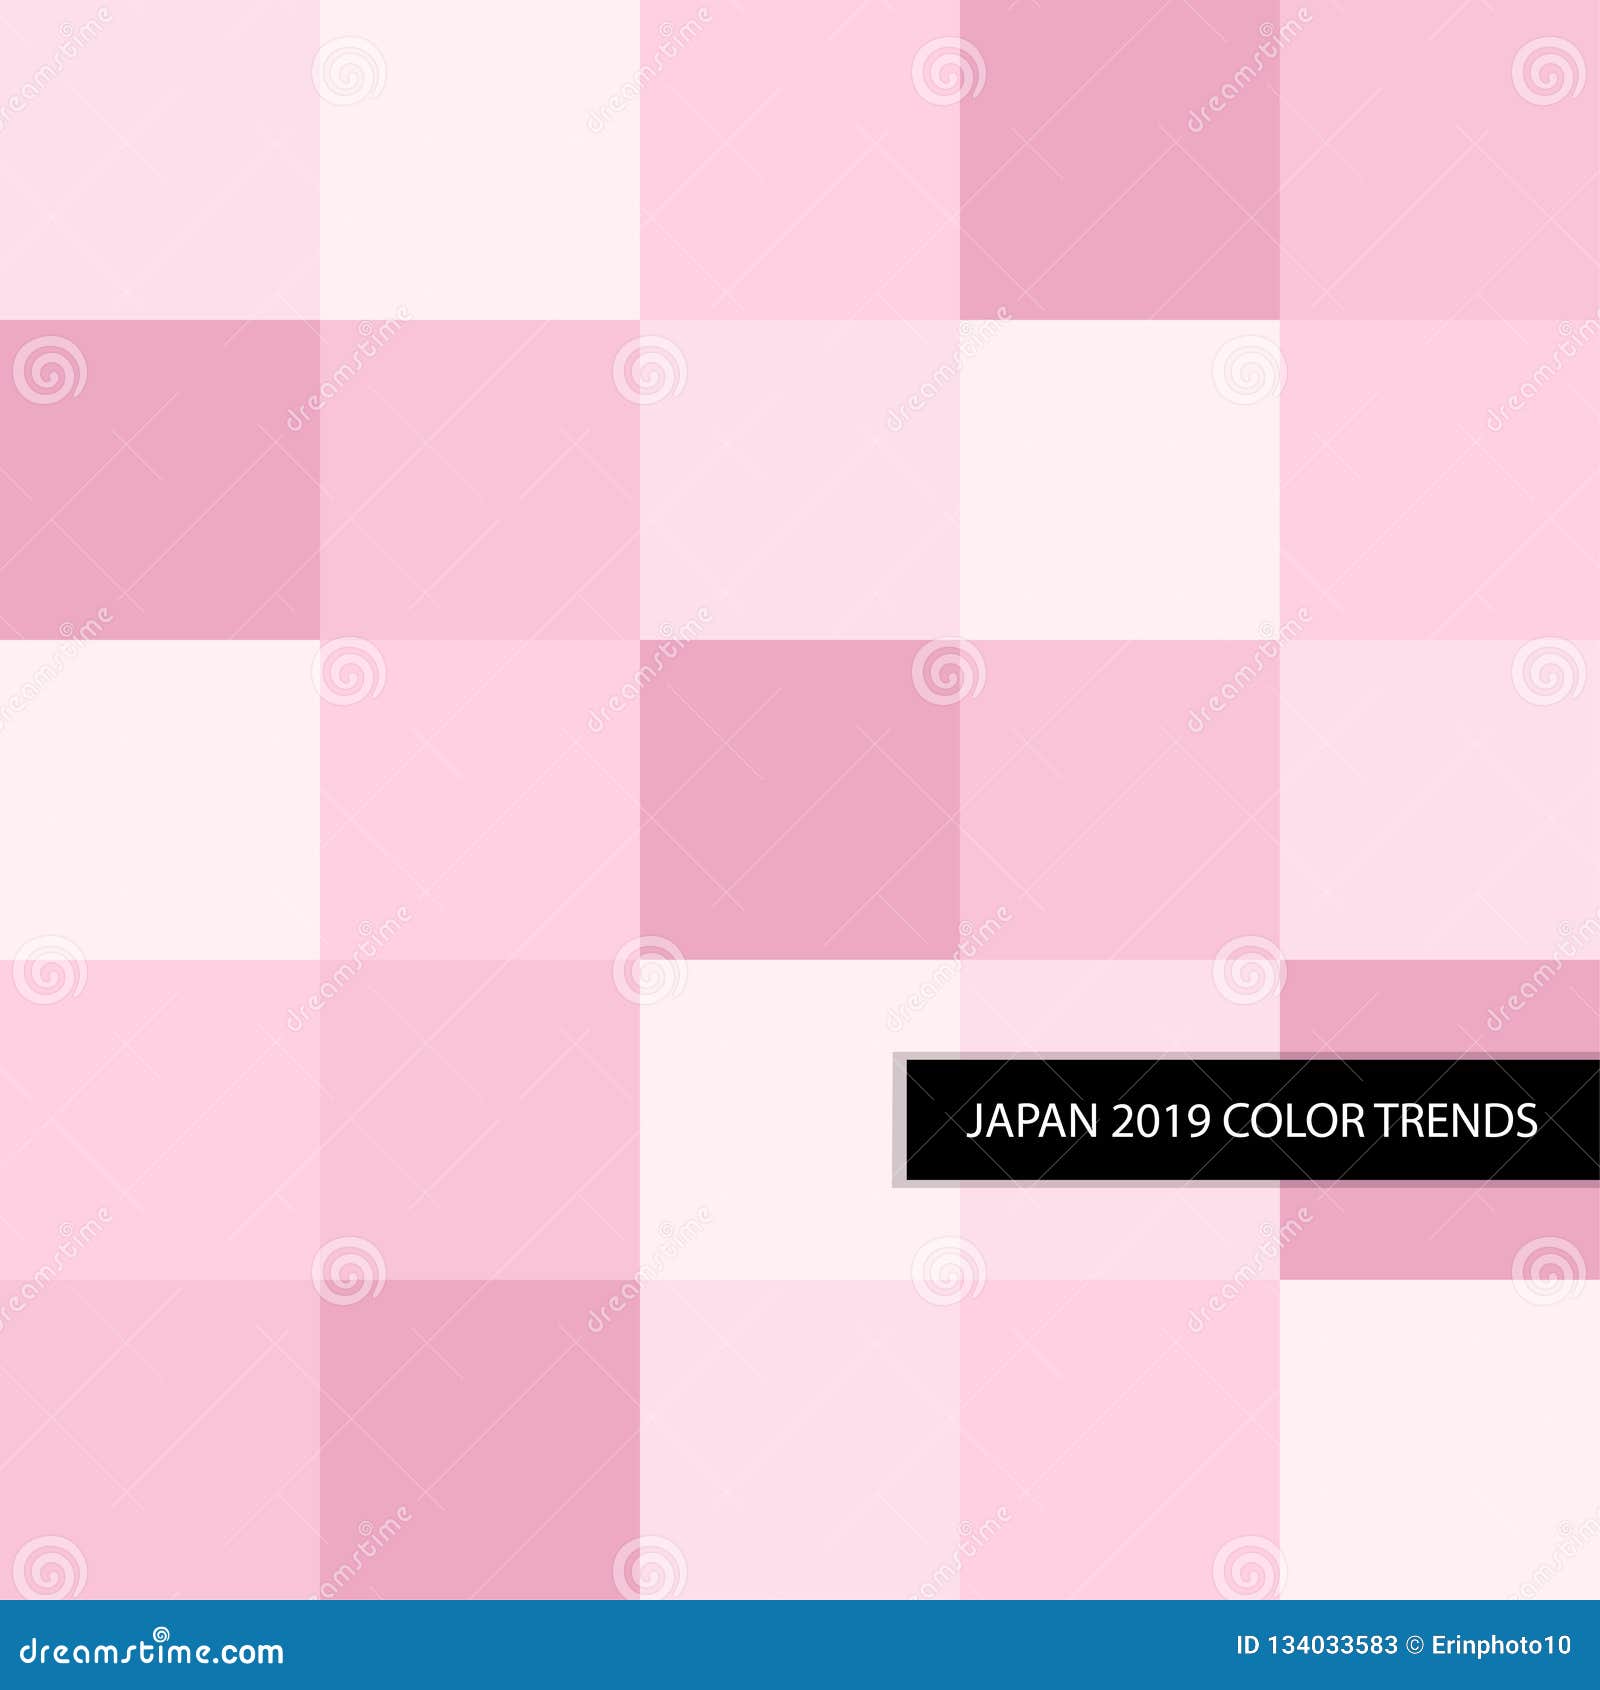 Hot Pink Color Palette